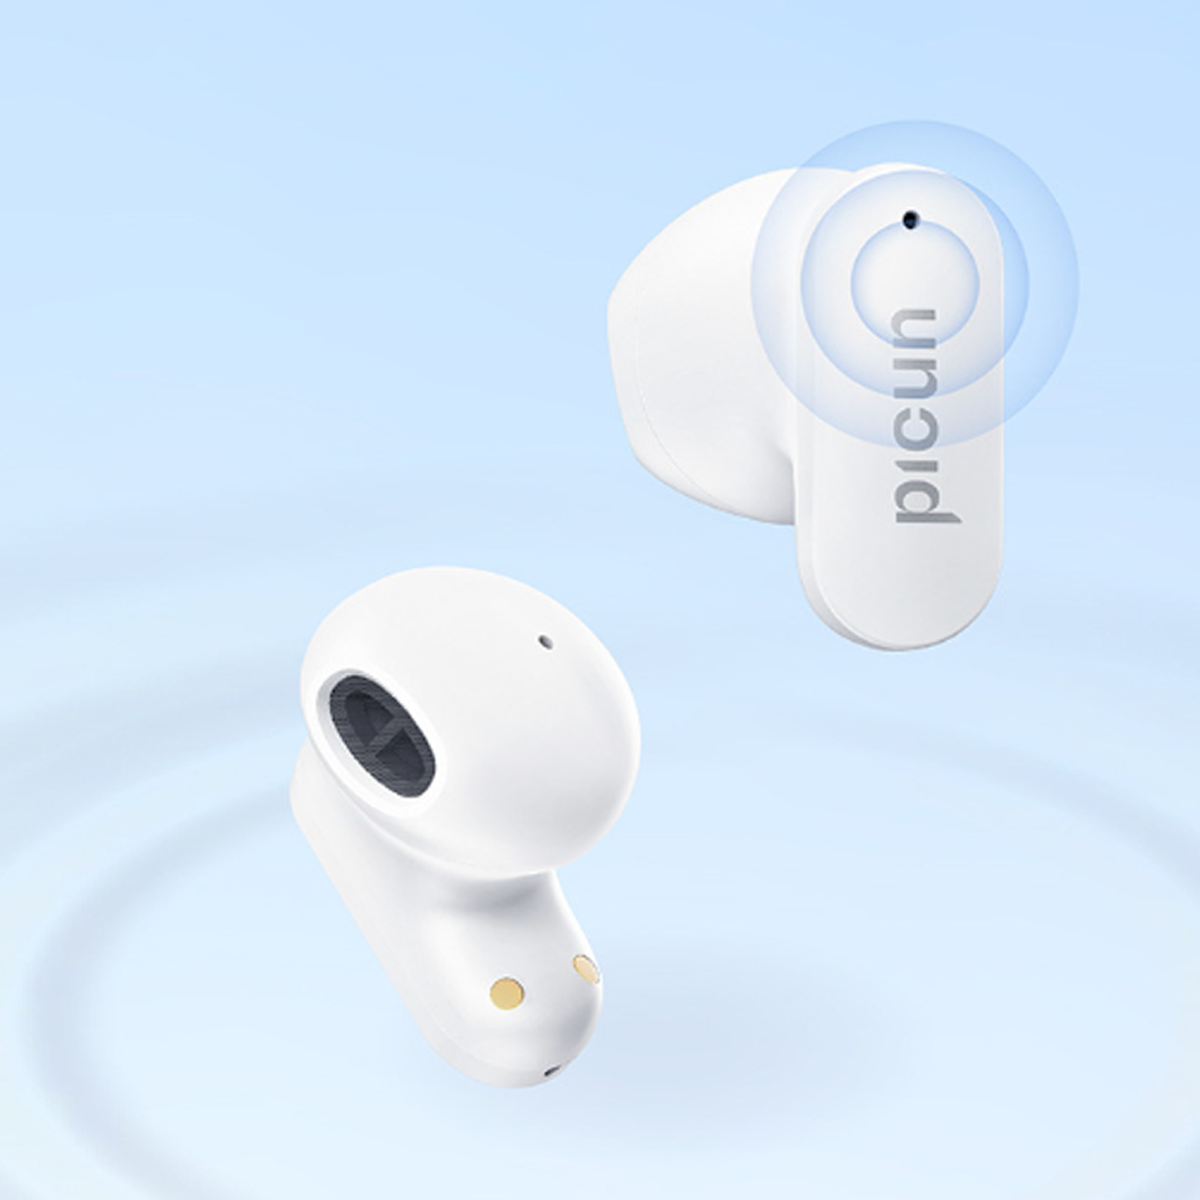 lange halb BYTELIKE Drahtloses Ohr im Sport Bluetooth Bluetooth-Headset In-ear Lebensdauer Headset, Bluetooth-Kopfhörer schwarz wasserdicht